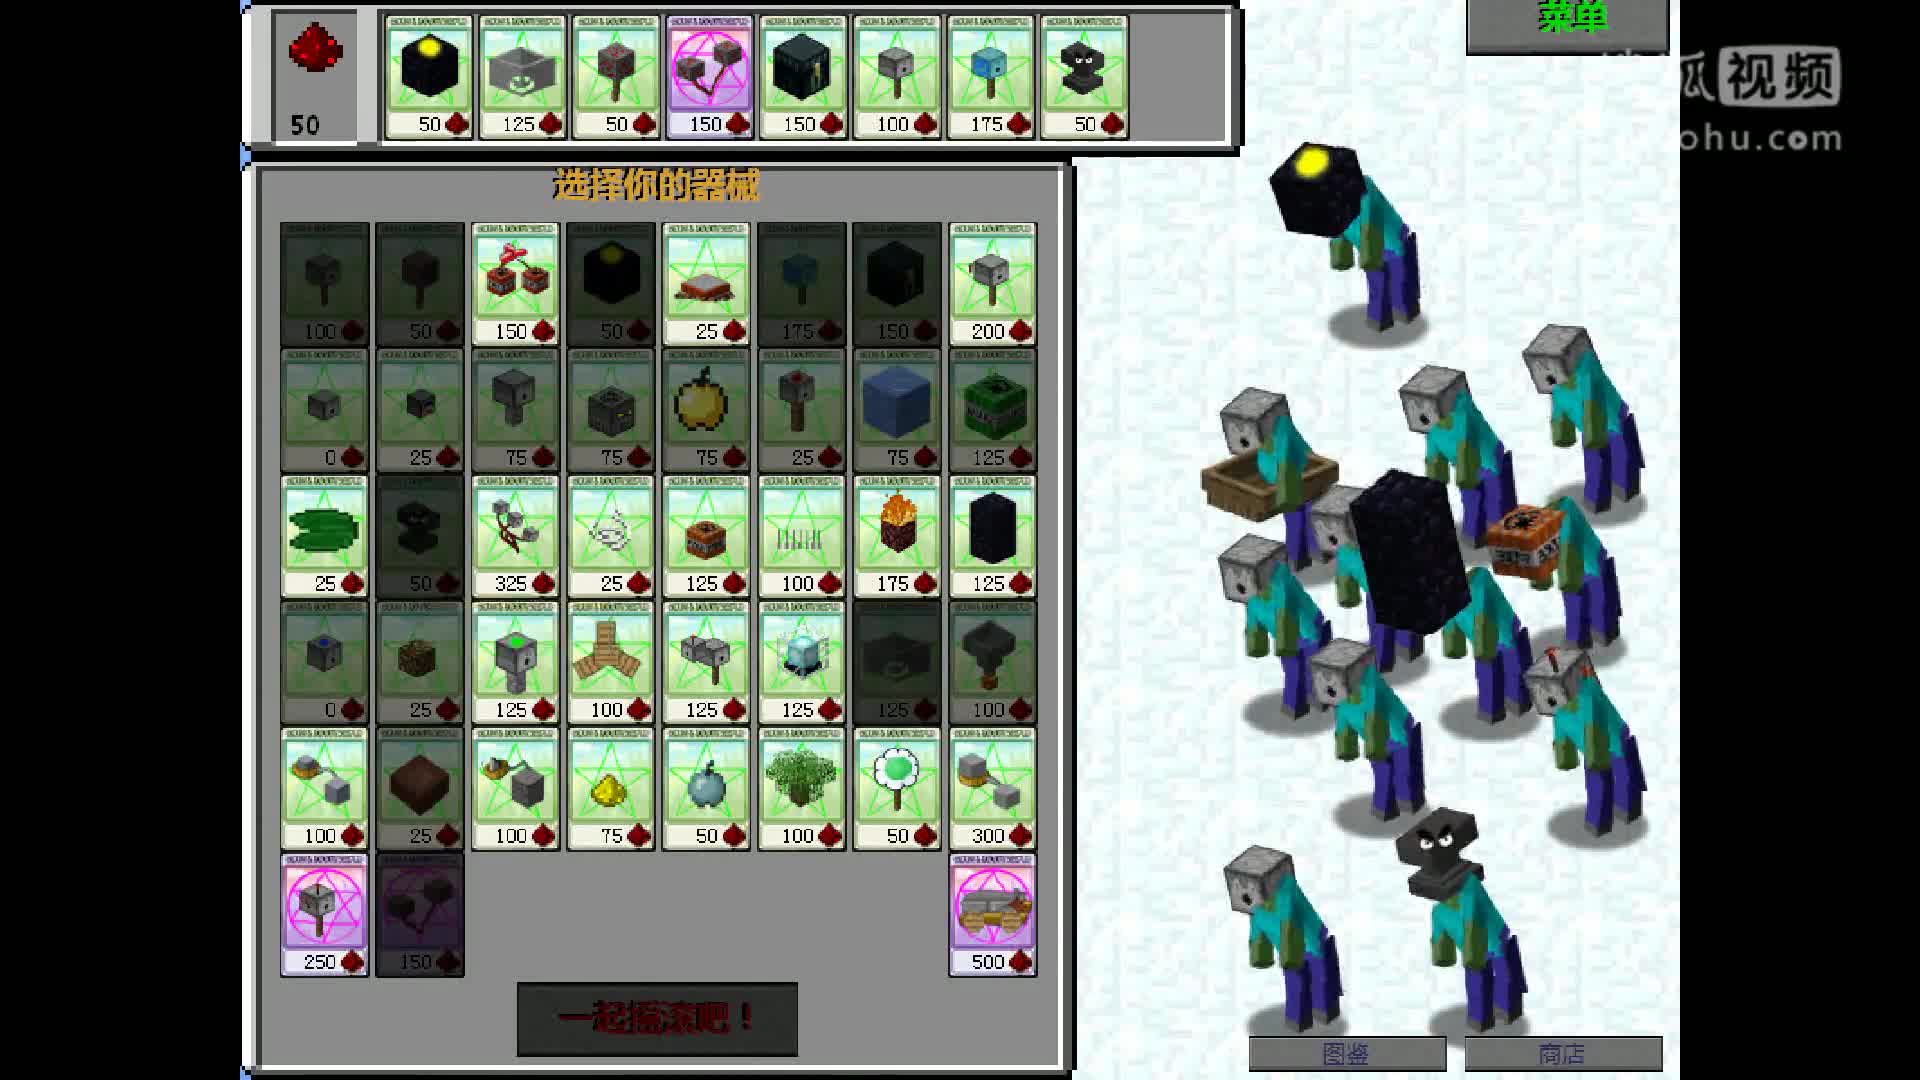 我的世界 植物大战僵尸51 升级版器械僵尸 minecraft